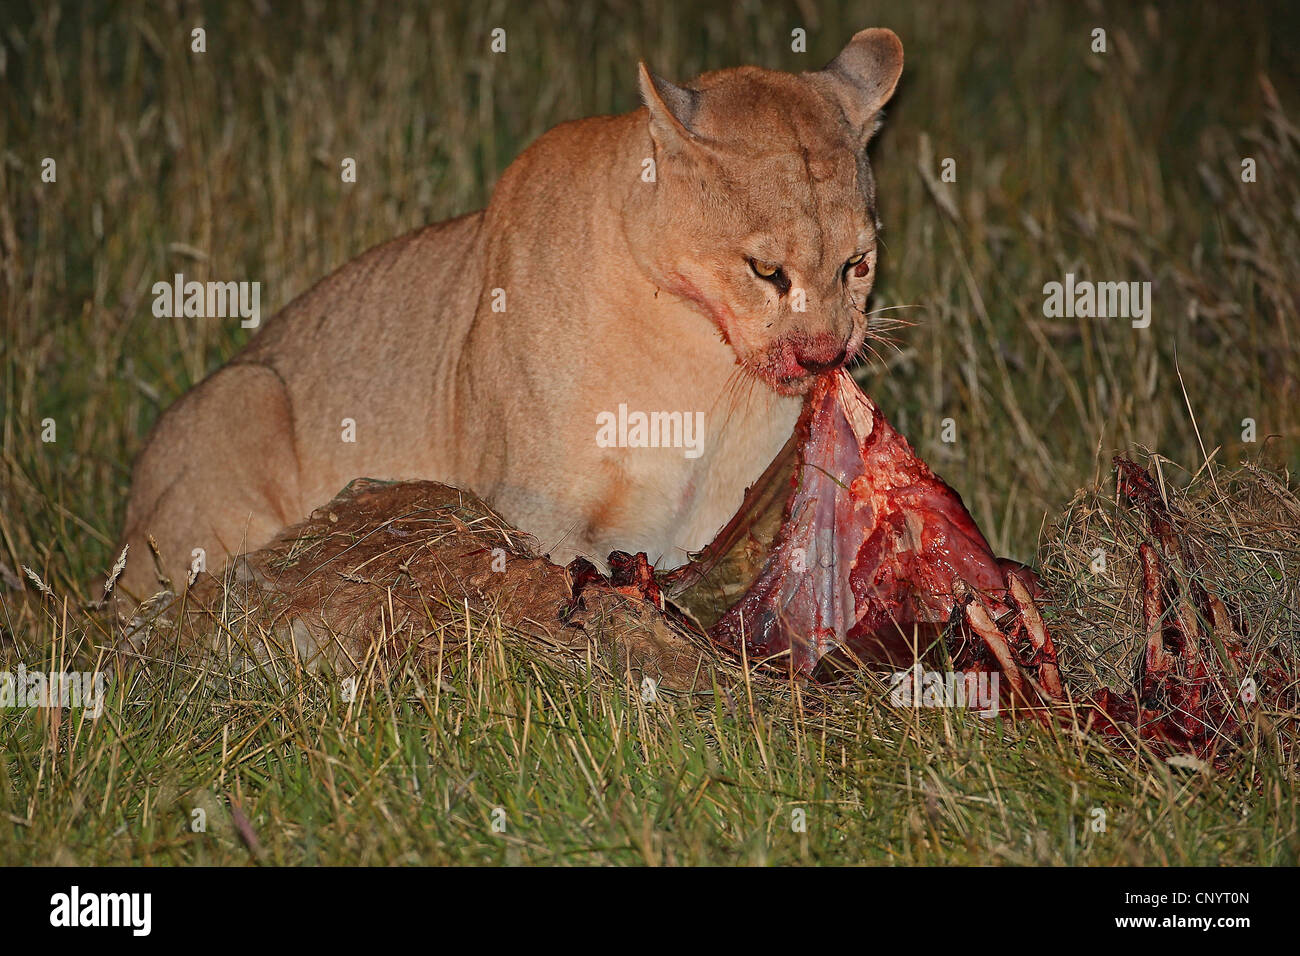 puma, mountain lion, cougar (Puma concolor, Profelis concolor), eating the prey, Chile, Torres del Paine National Park Stock Photo